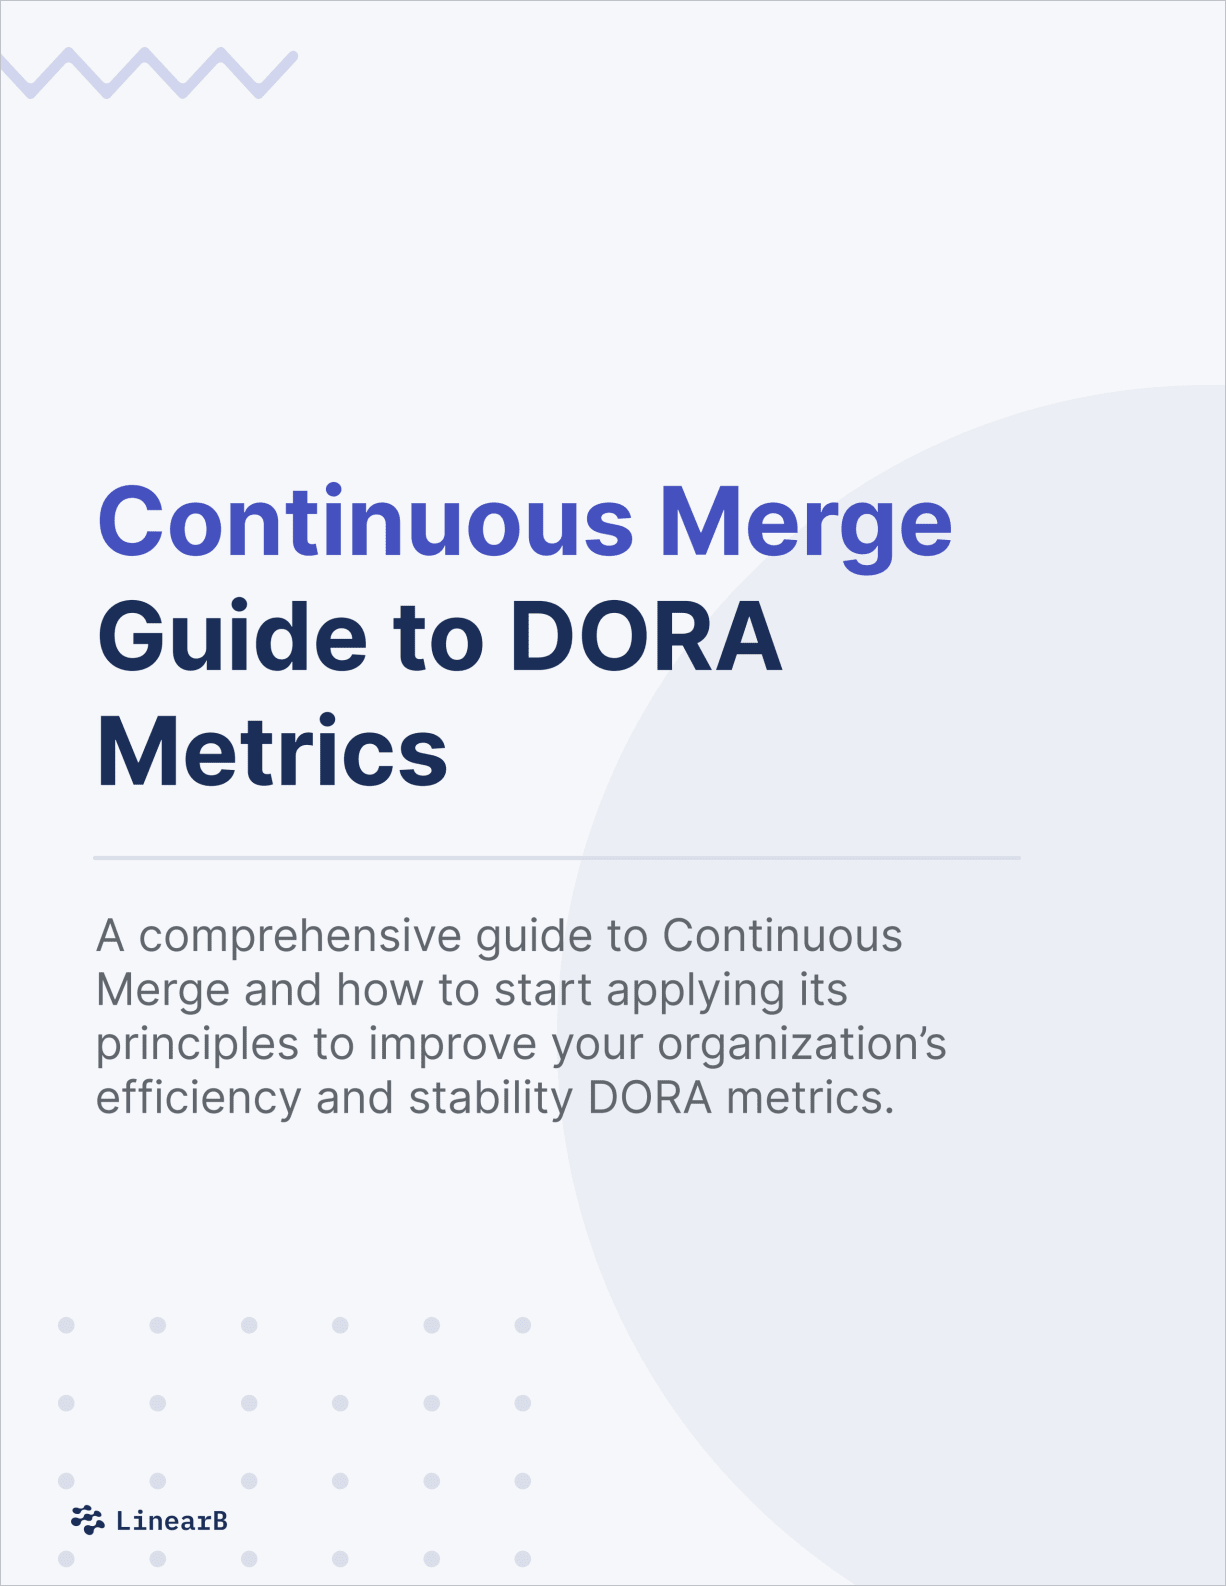 resources/continuous merge guide dora metrics